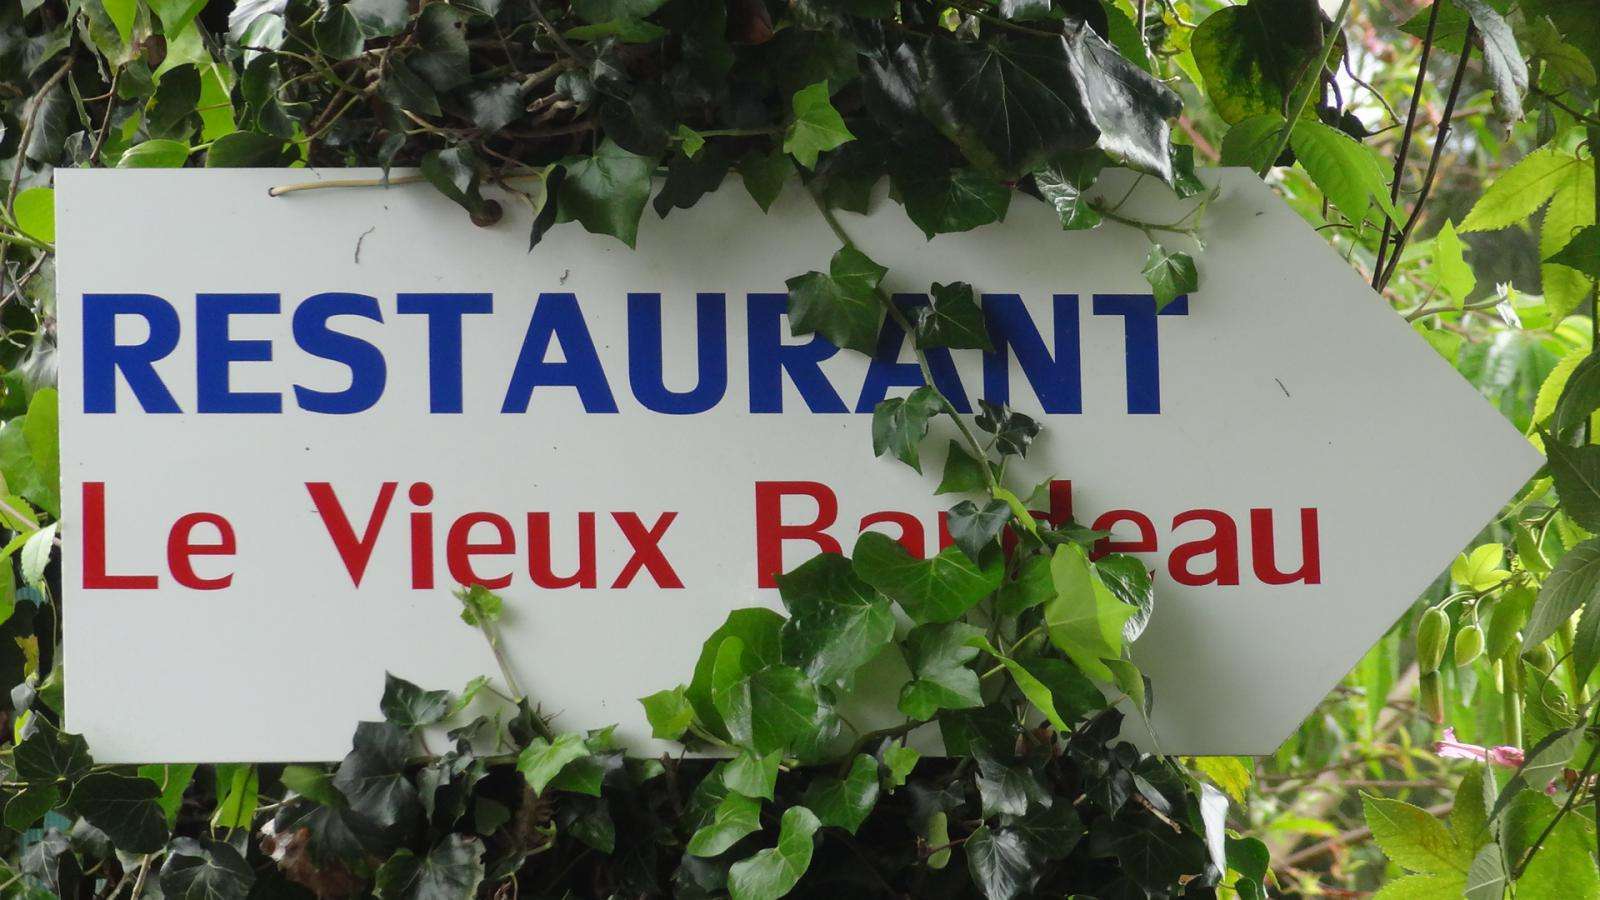 Le Vieux Bardeau : Restaurant Le Tampon 97430 (adresse, horaire et avis)